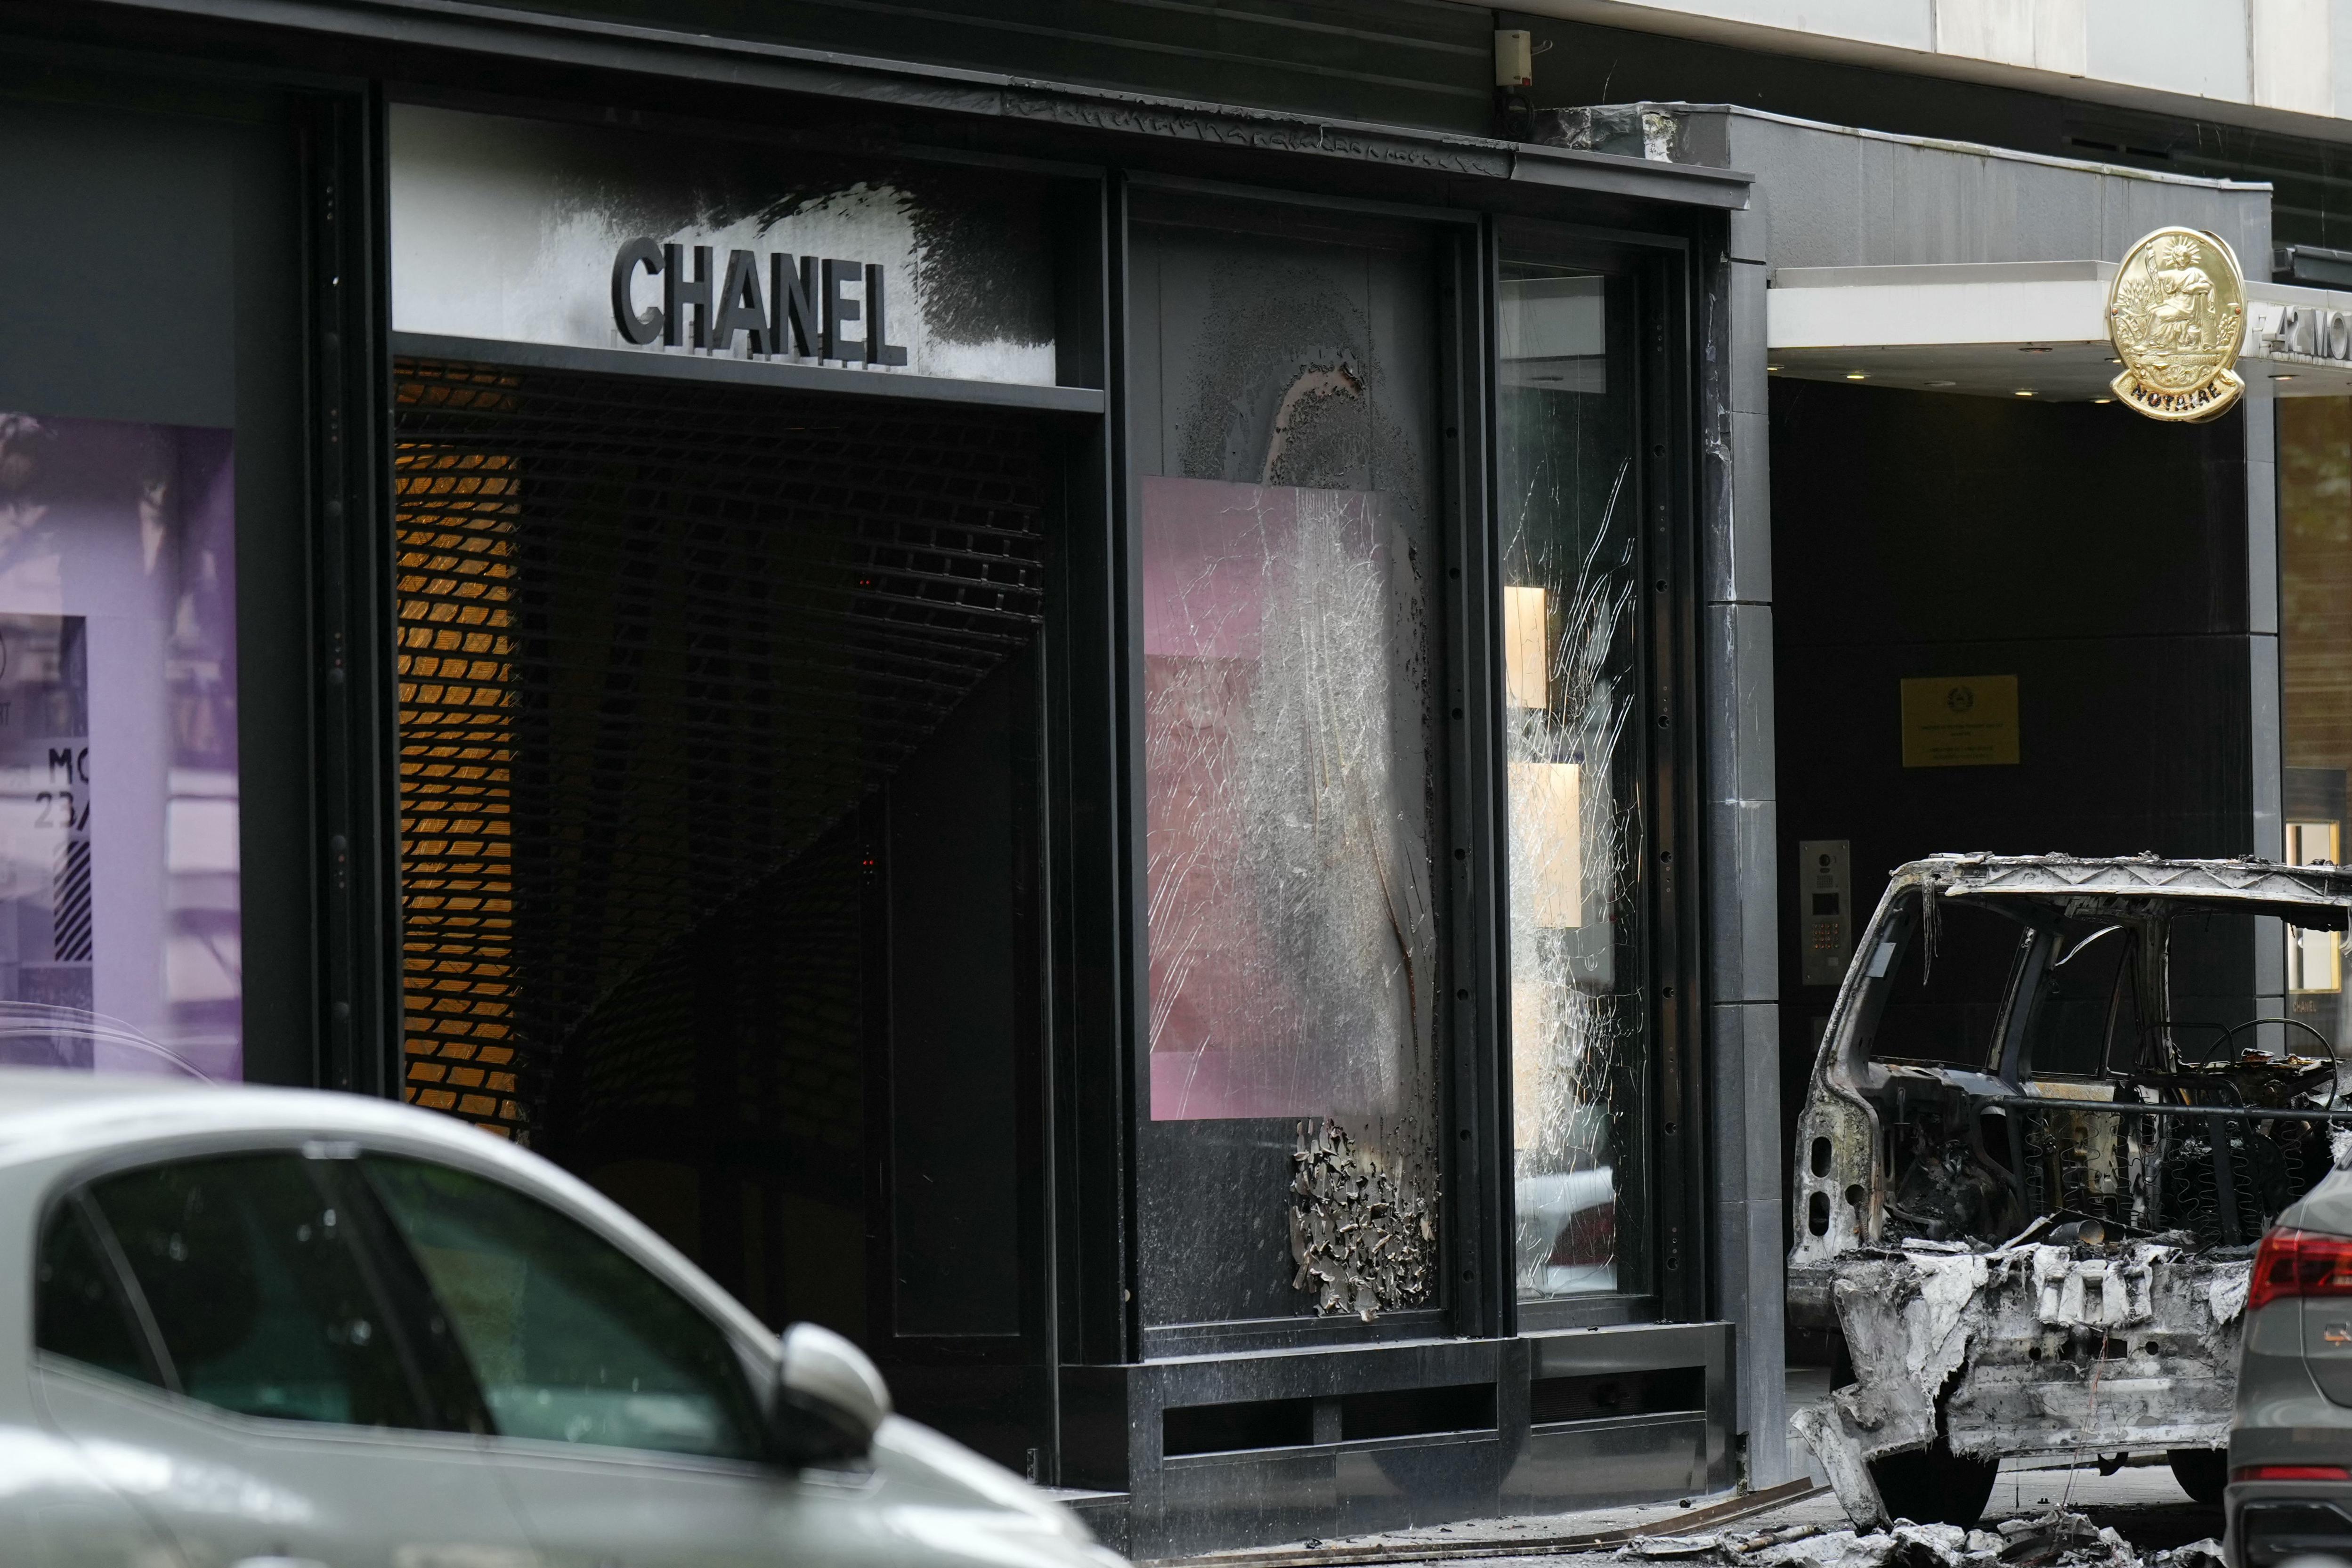 Spettacolare furto nel cuore di Parigi - svaligiato negozio Chanel